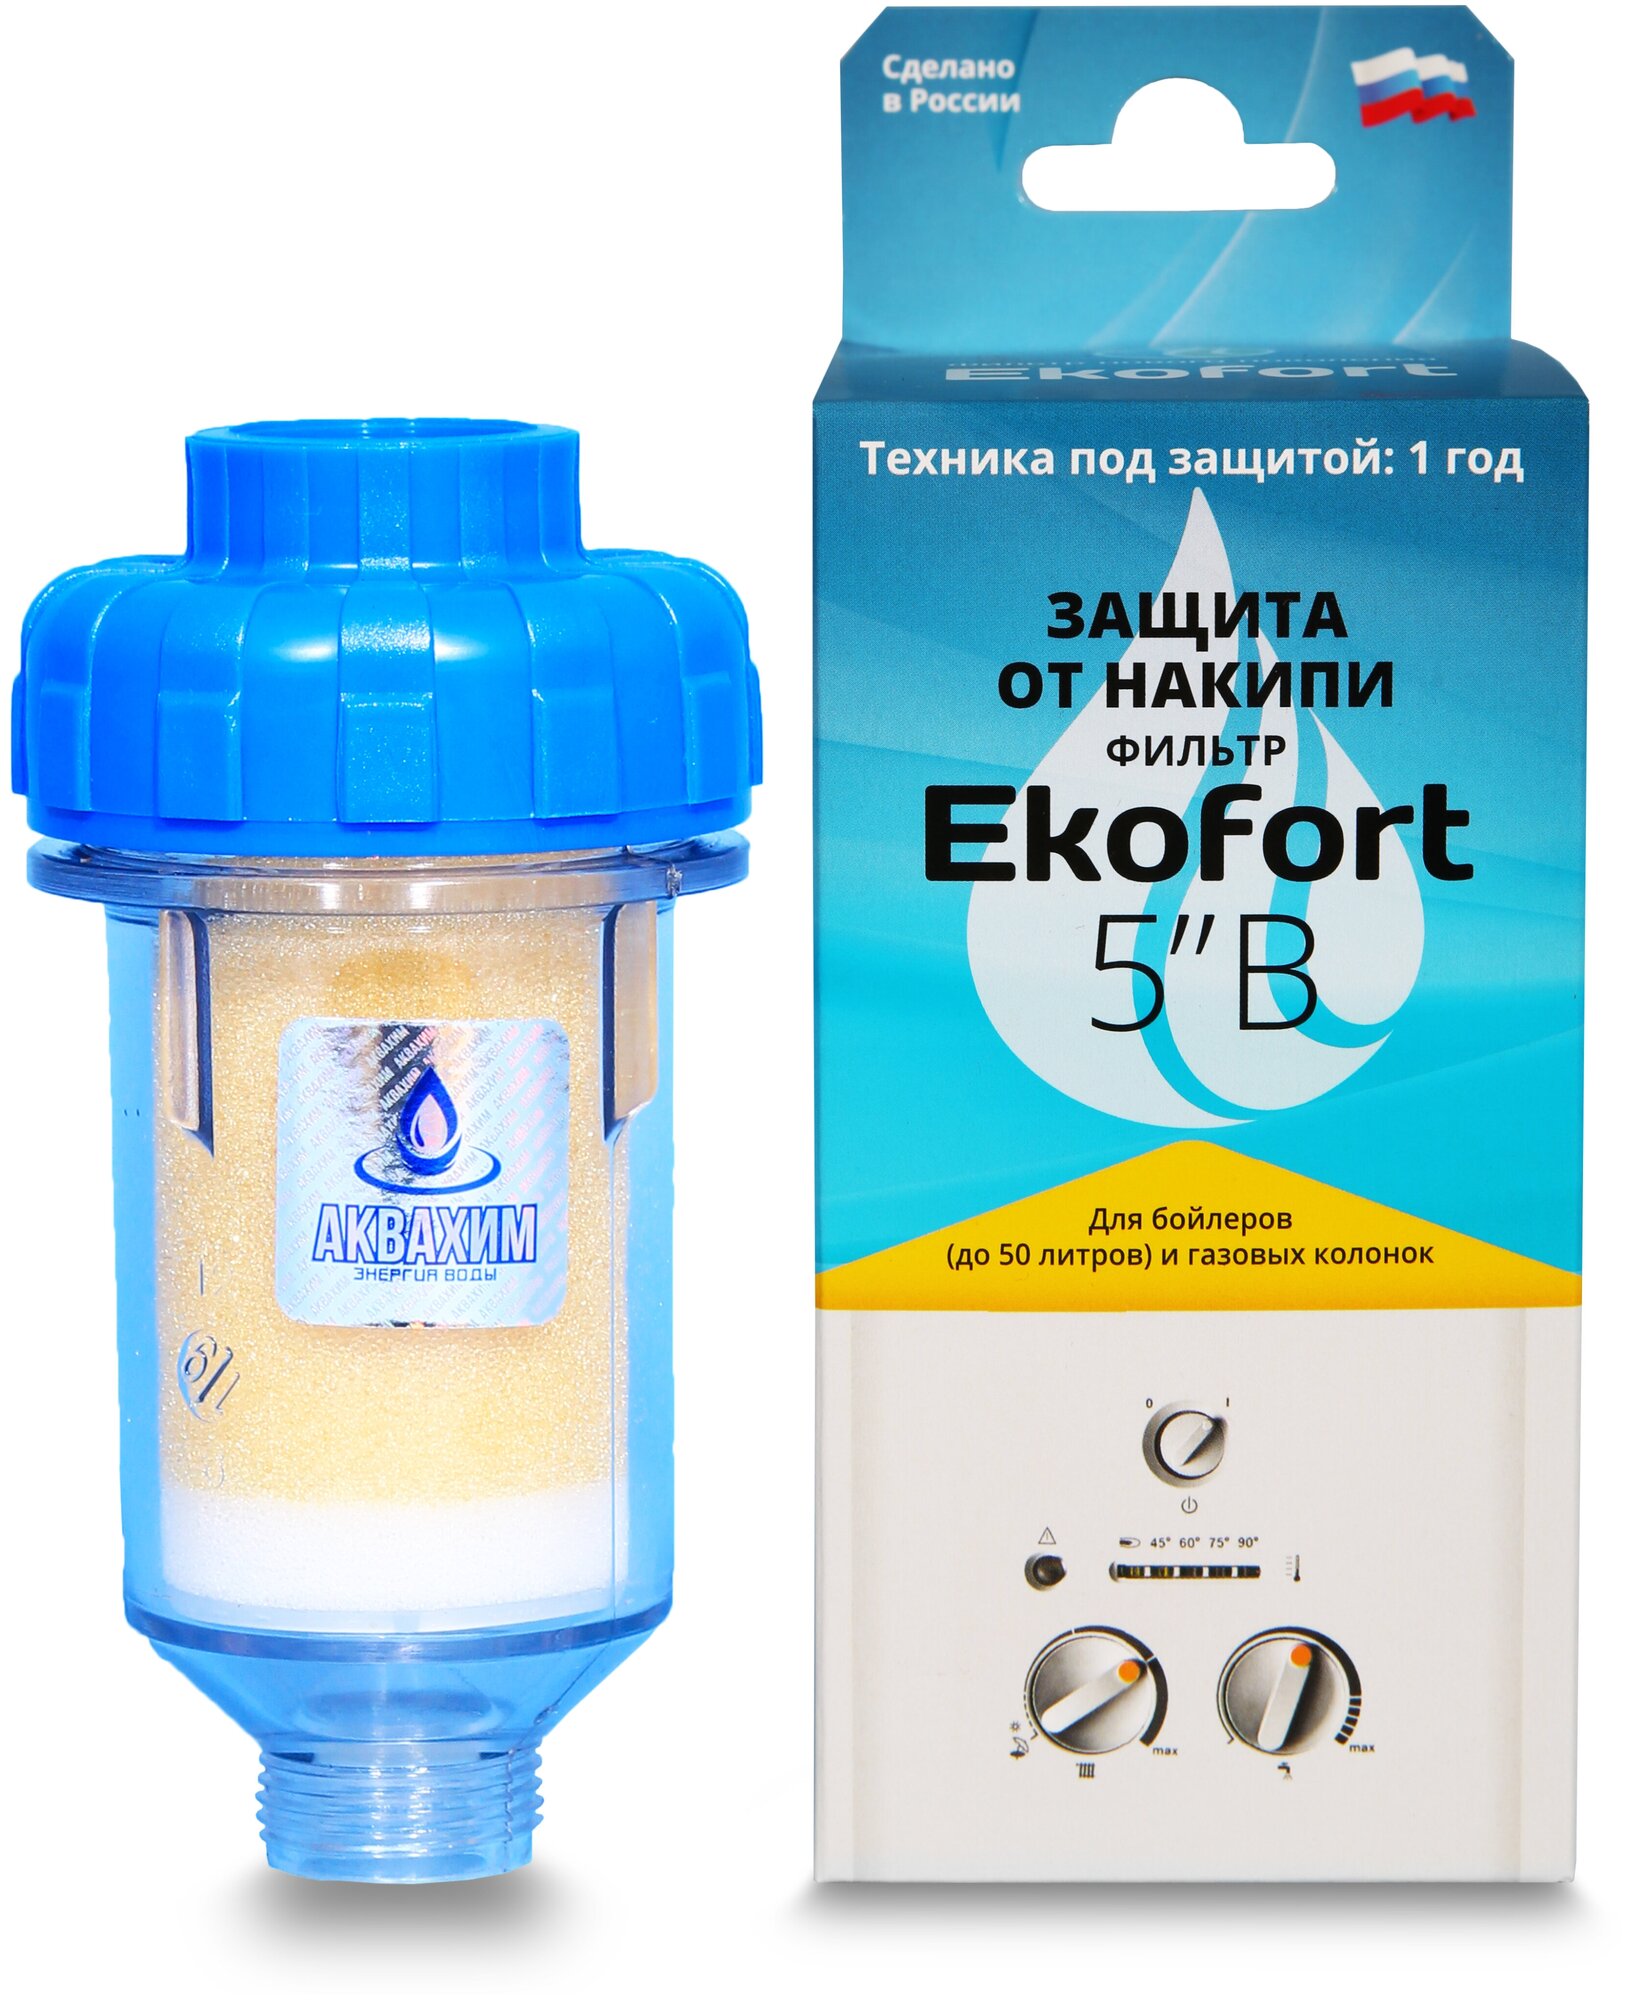 Фильтр Ekofort 5" B (1/2") для защиты от накипи газовых и электрических водонагревателей, бойлеров - фотография № 1